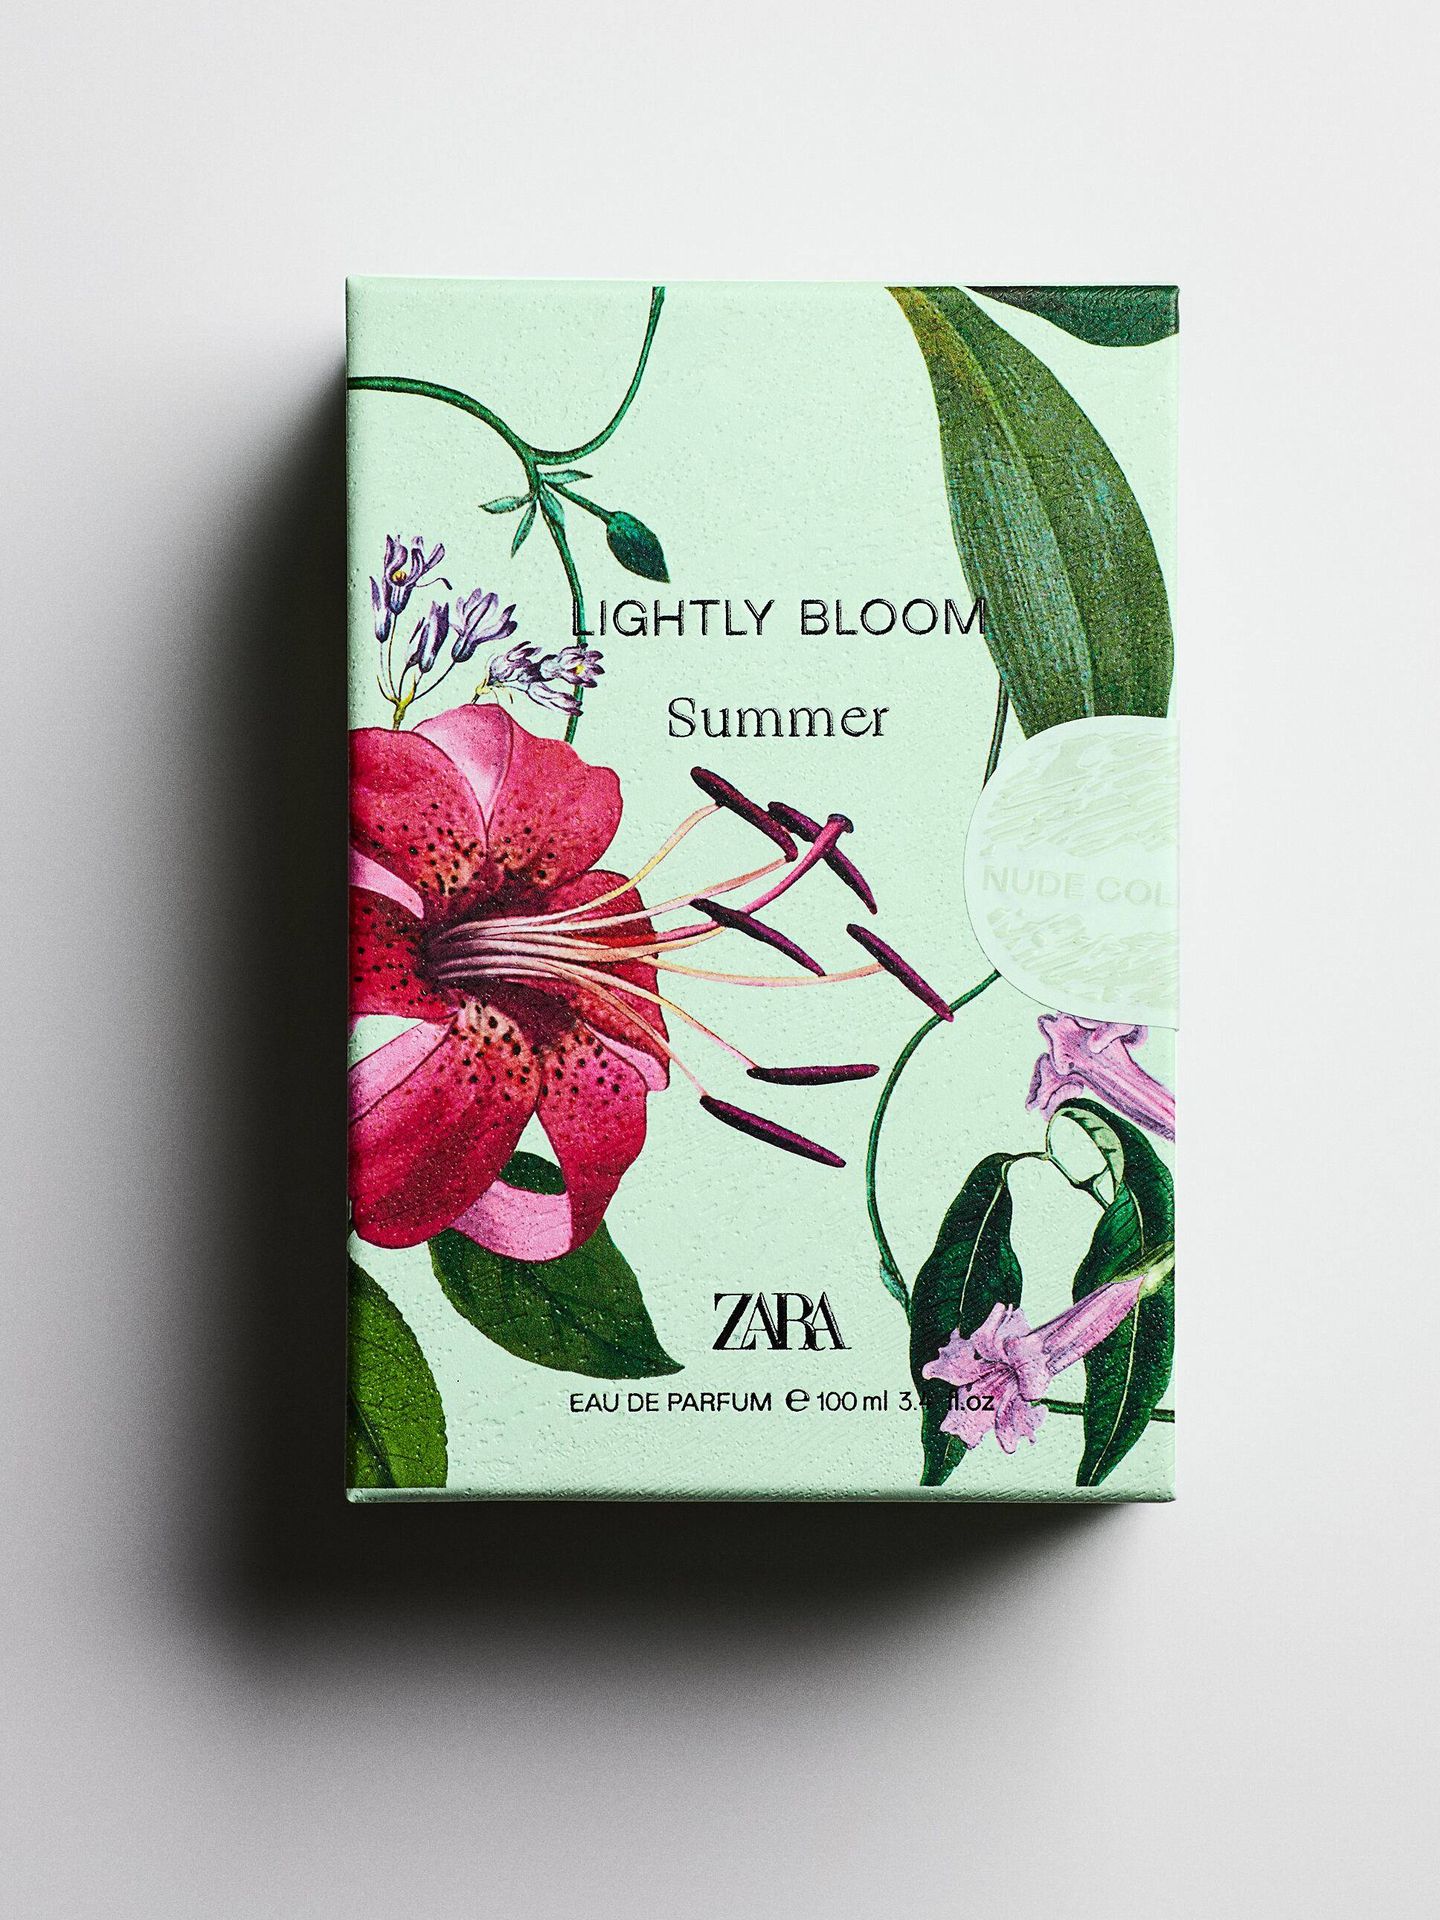 Colonia Lighty Bloom Summer de Zara. (Cortesía)